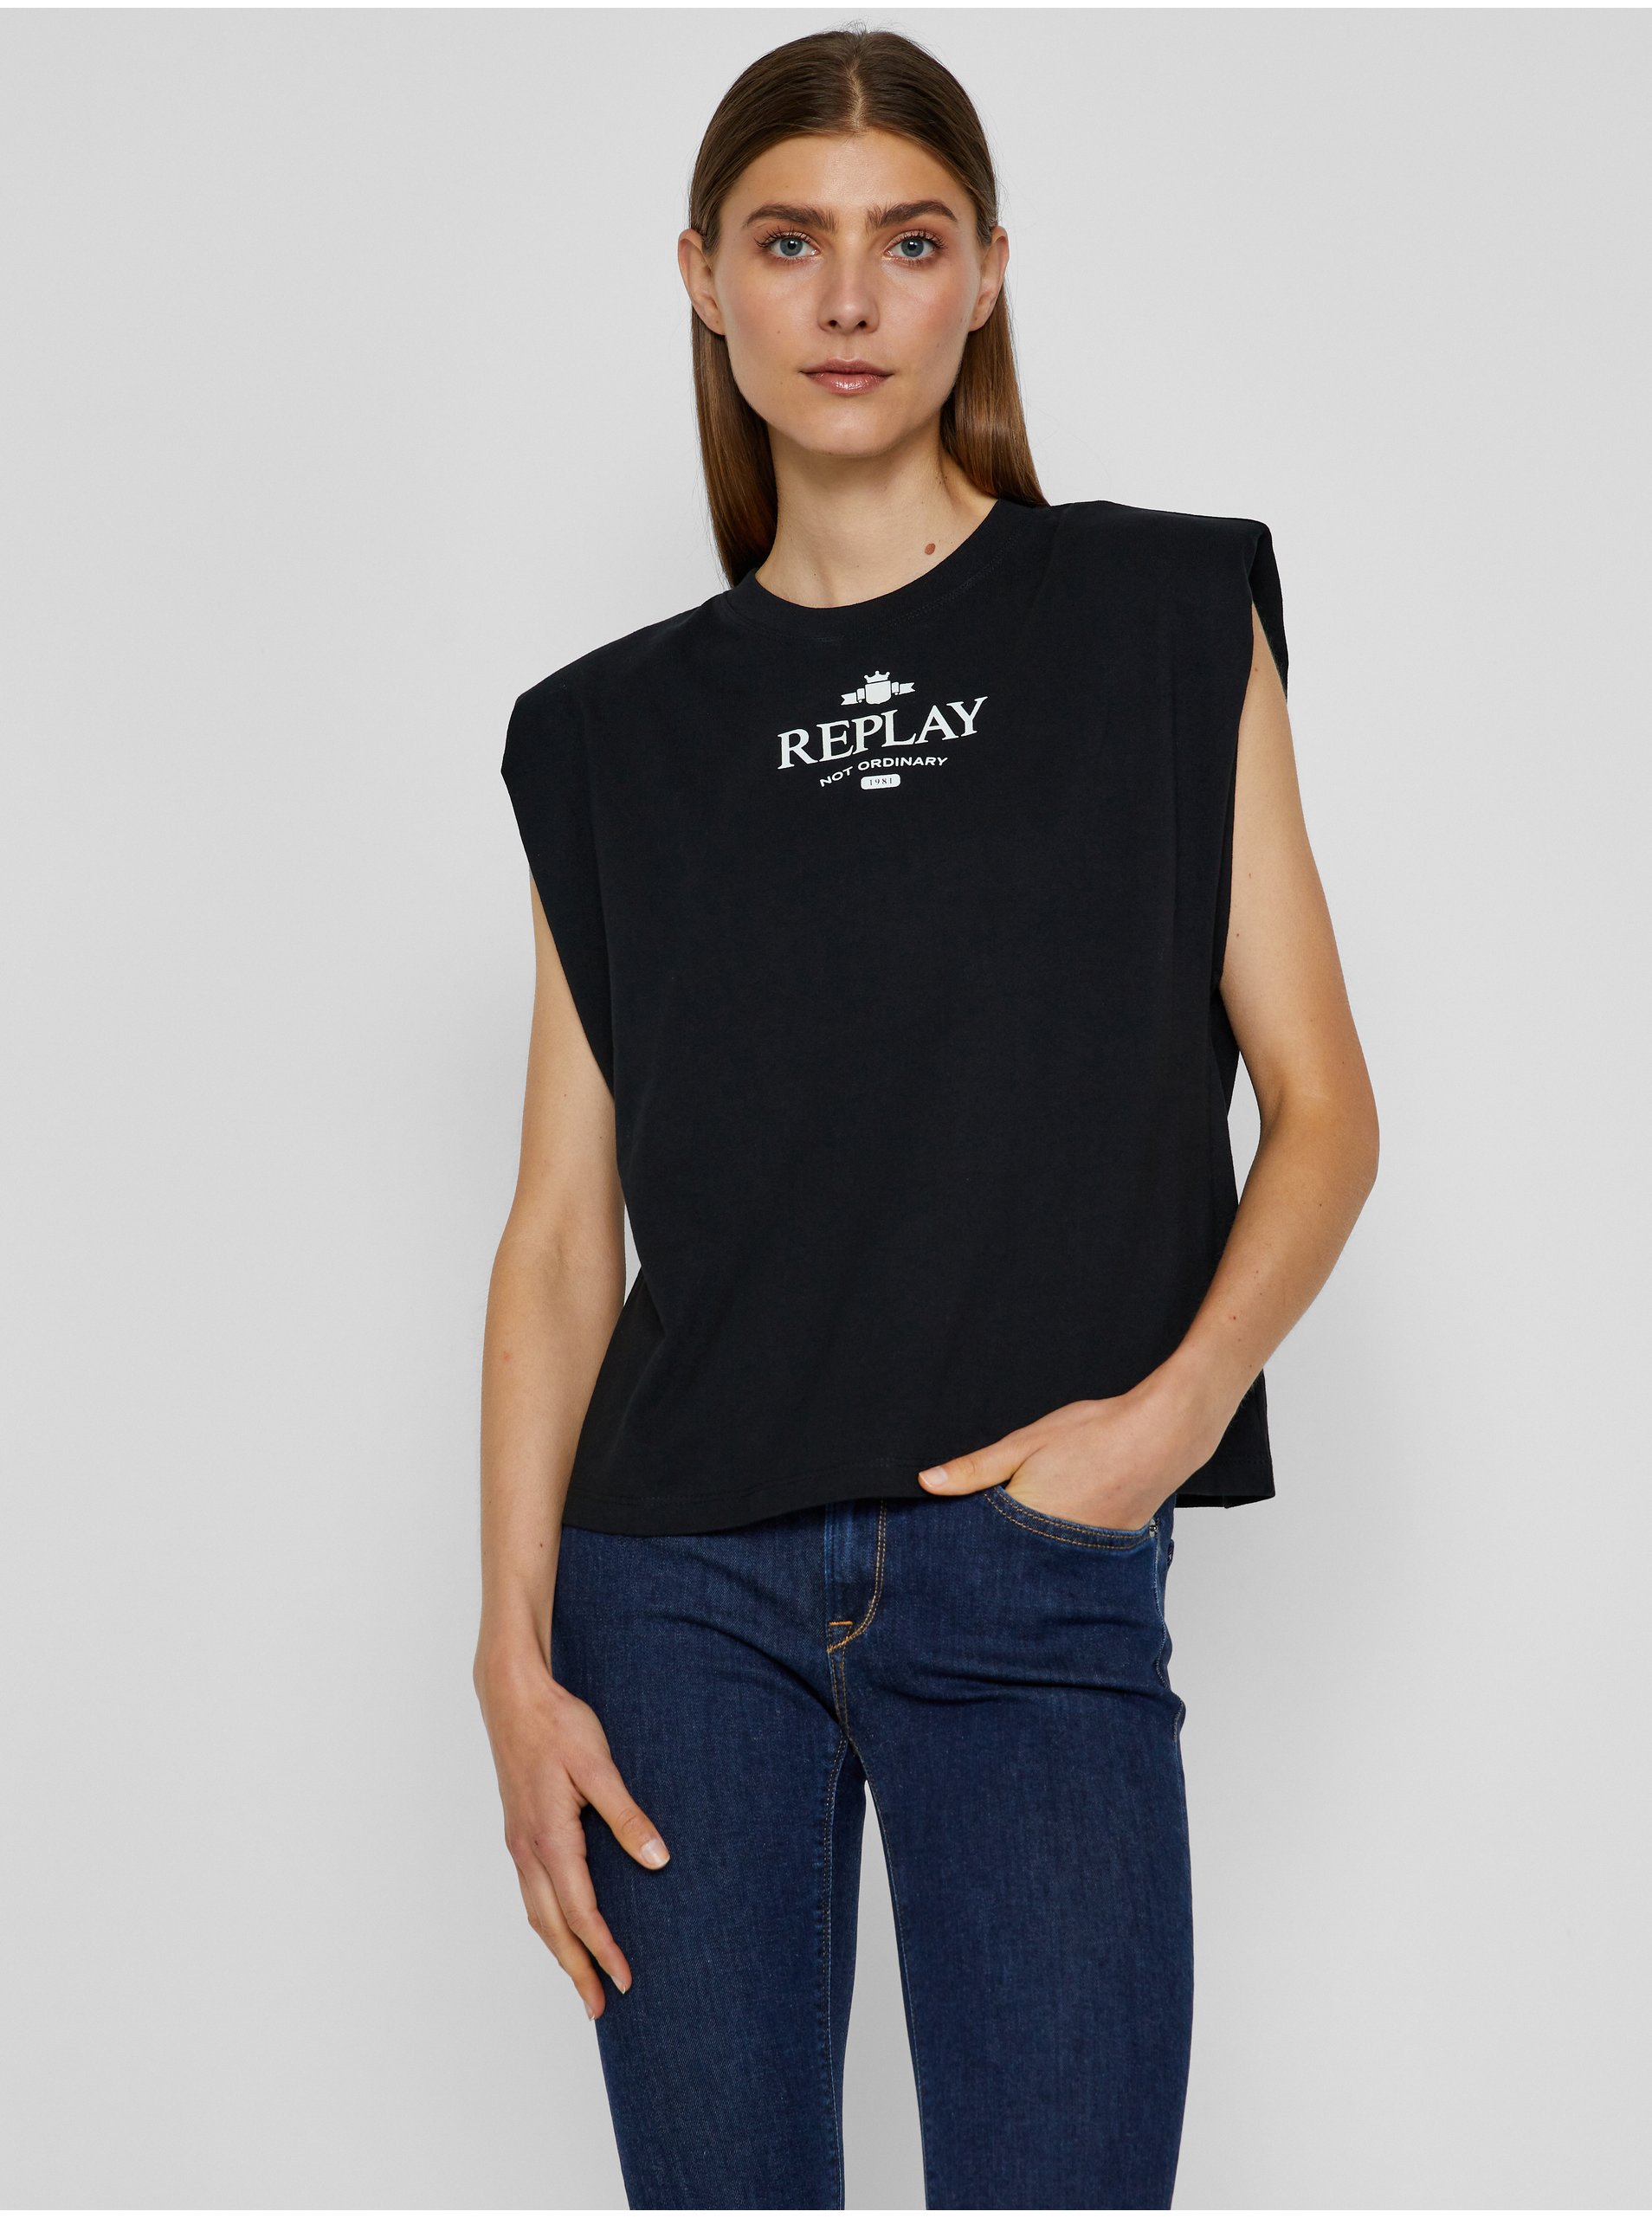 Lacno Čierne dámske tričko s potlačou Replay